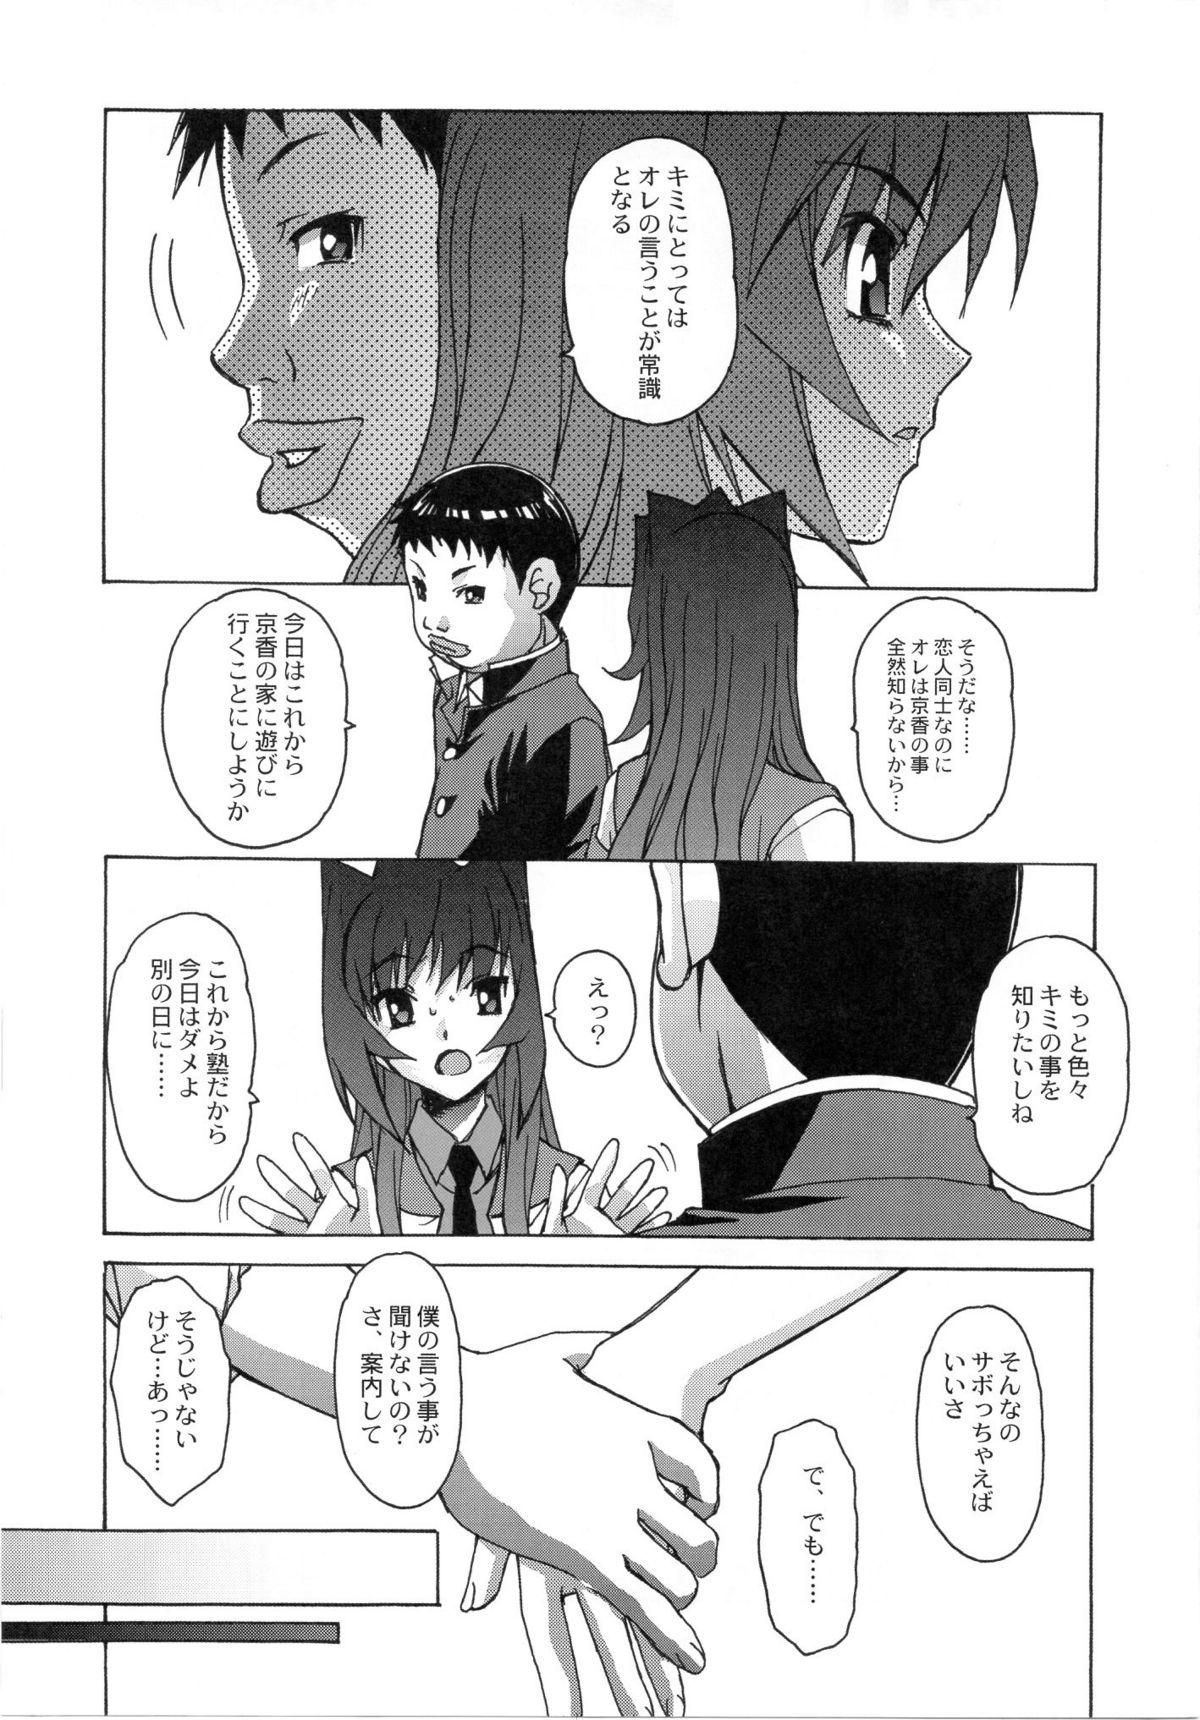 Cutie Otonano Do-wa Vol. 24 Spit - Page 12